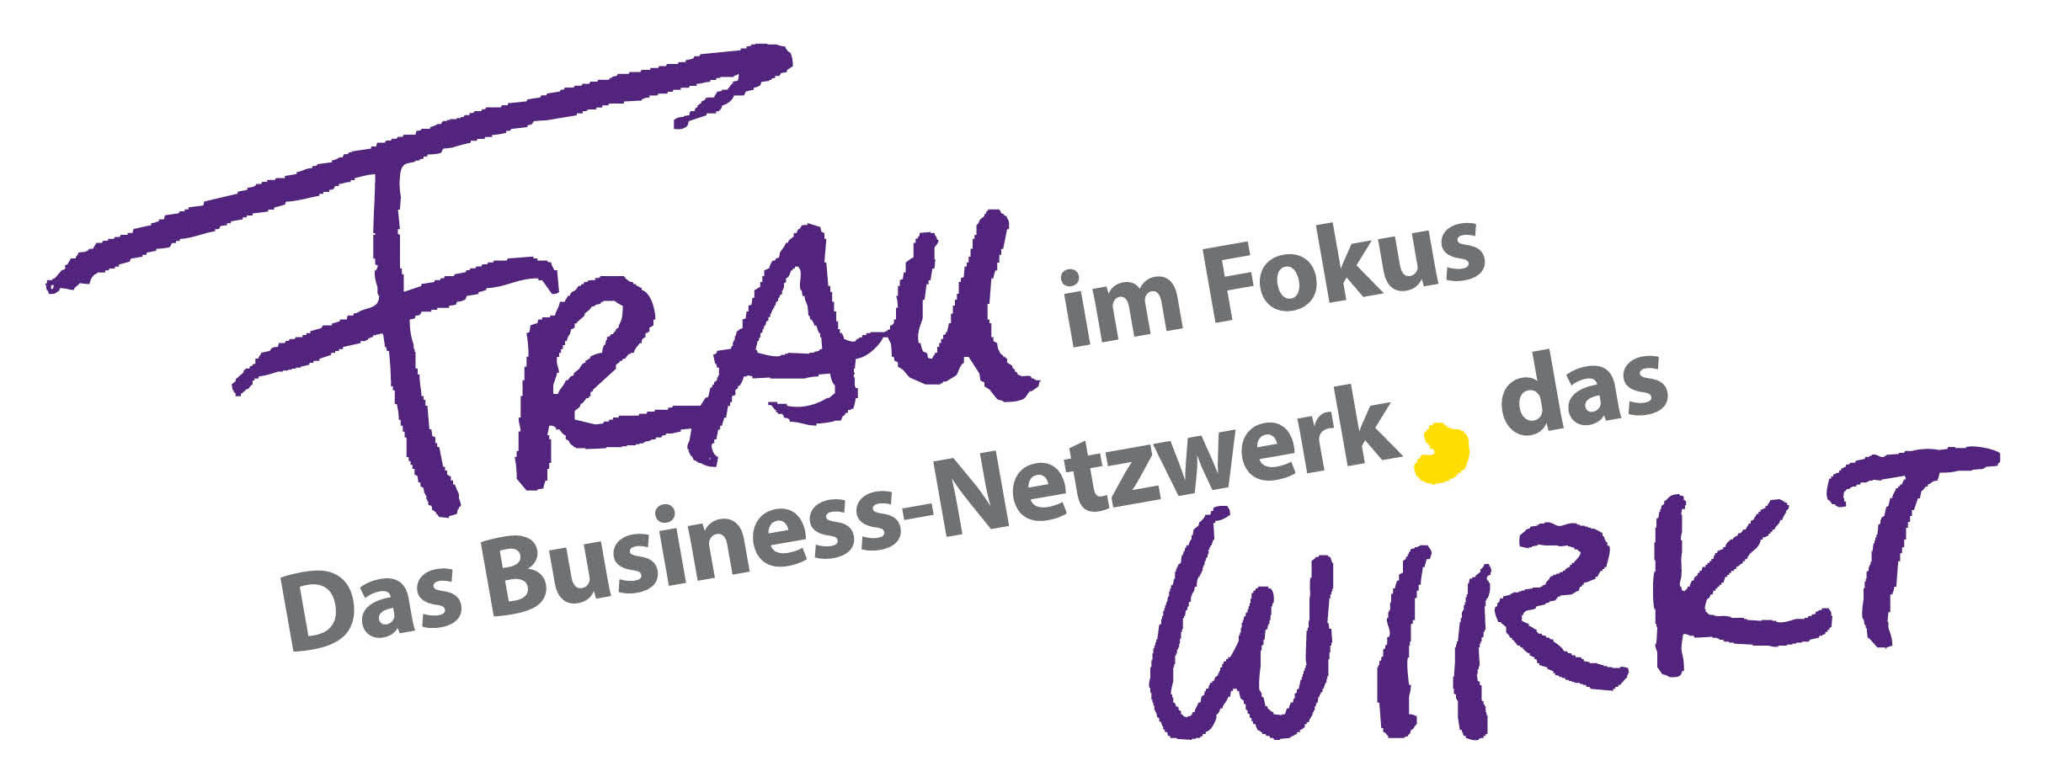 FRAU im Fokus - Das Business-Netzwerk das WIRKT